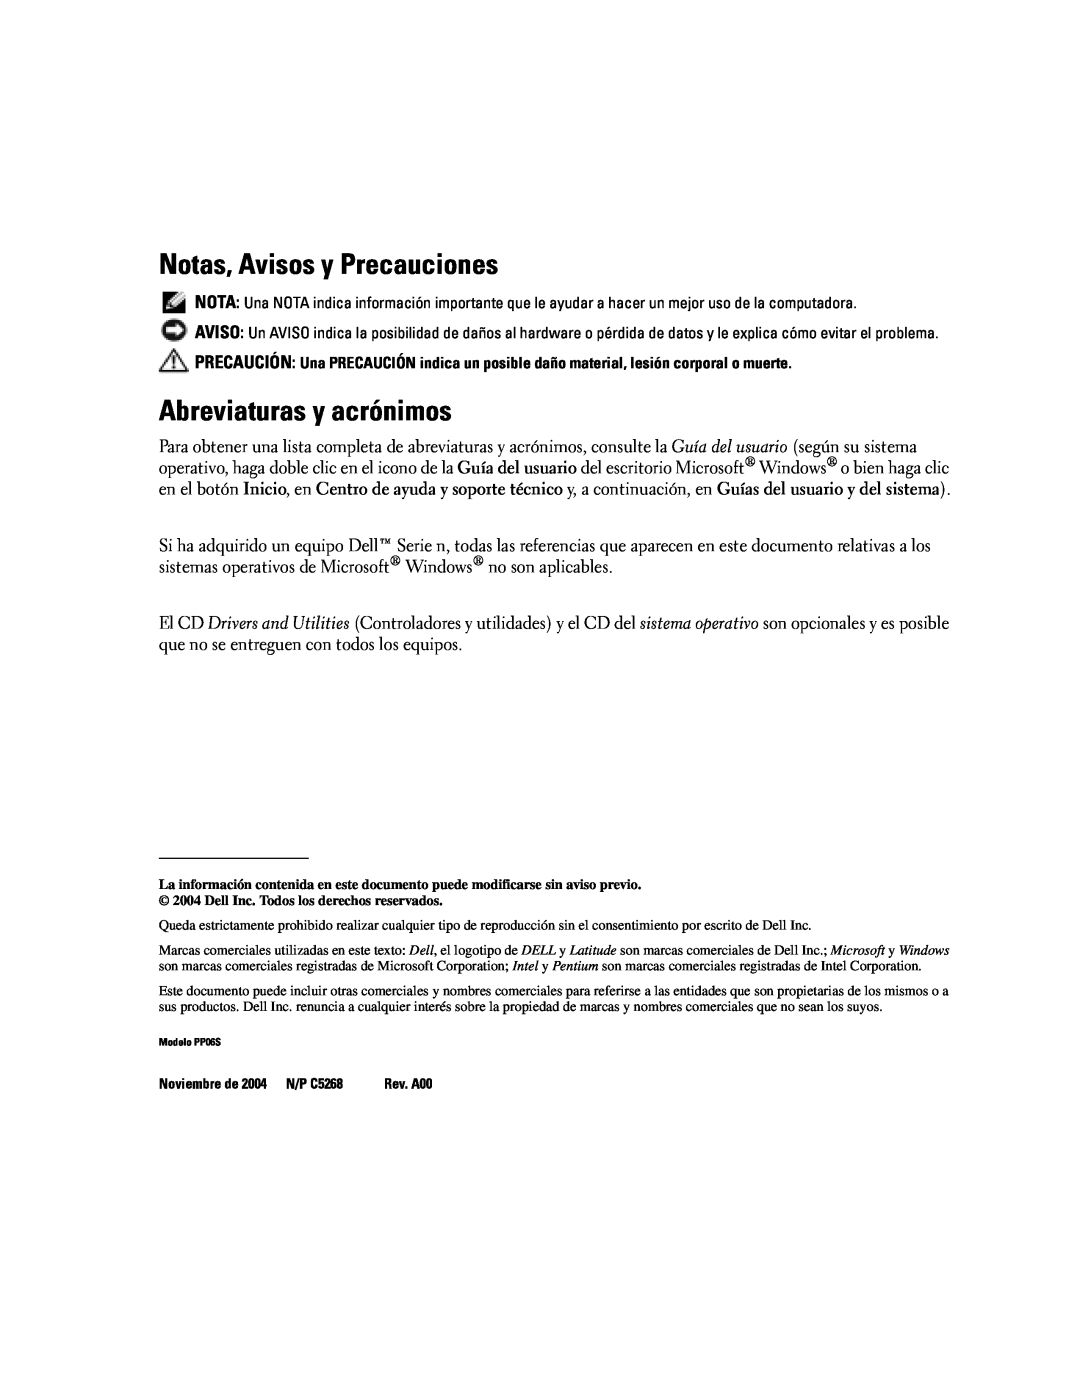 Dell PP06S manual Notas, Avisos y Precauciones, Abreviaturas y acrónimos, Noviembre de 2004 N/P C5268 